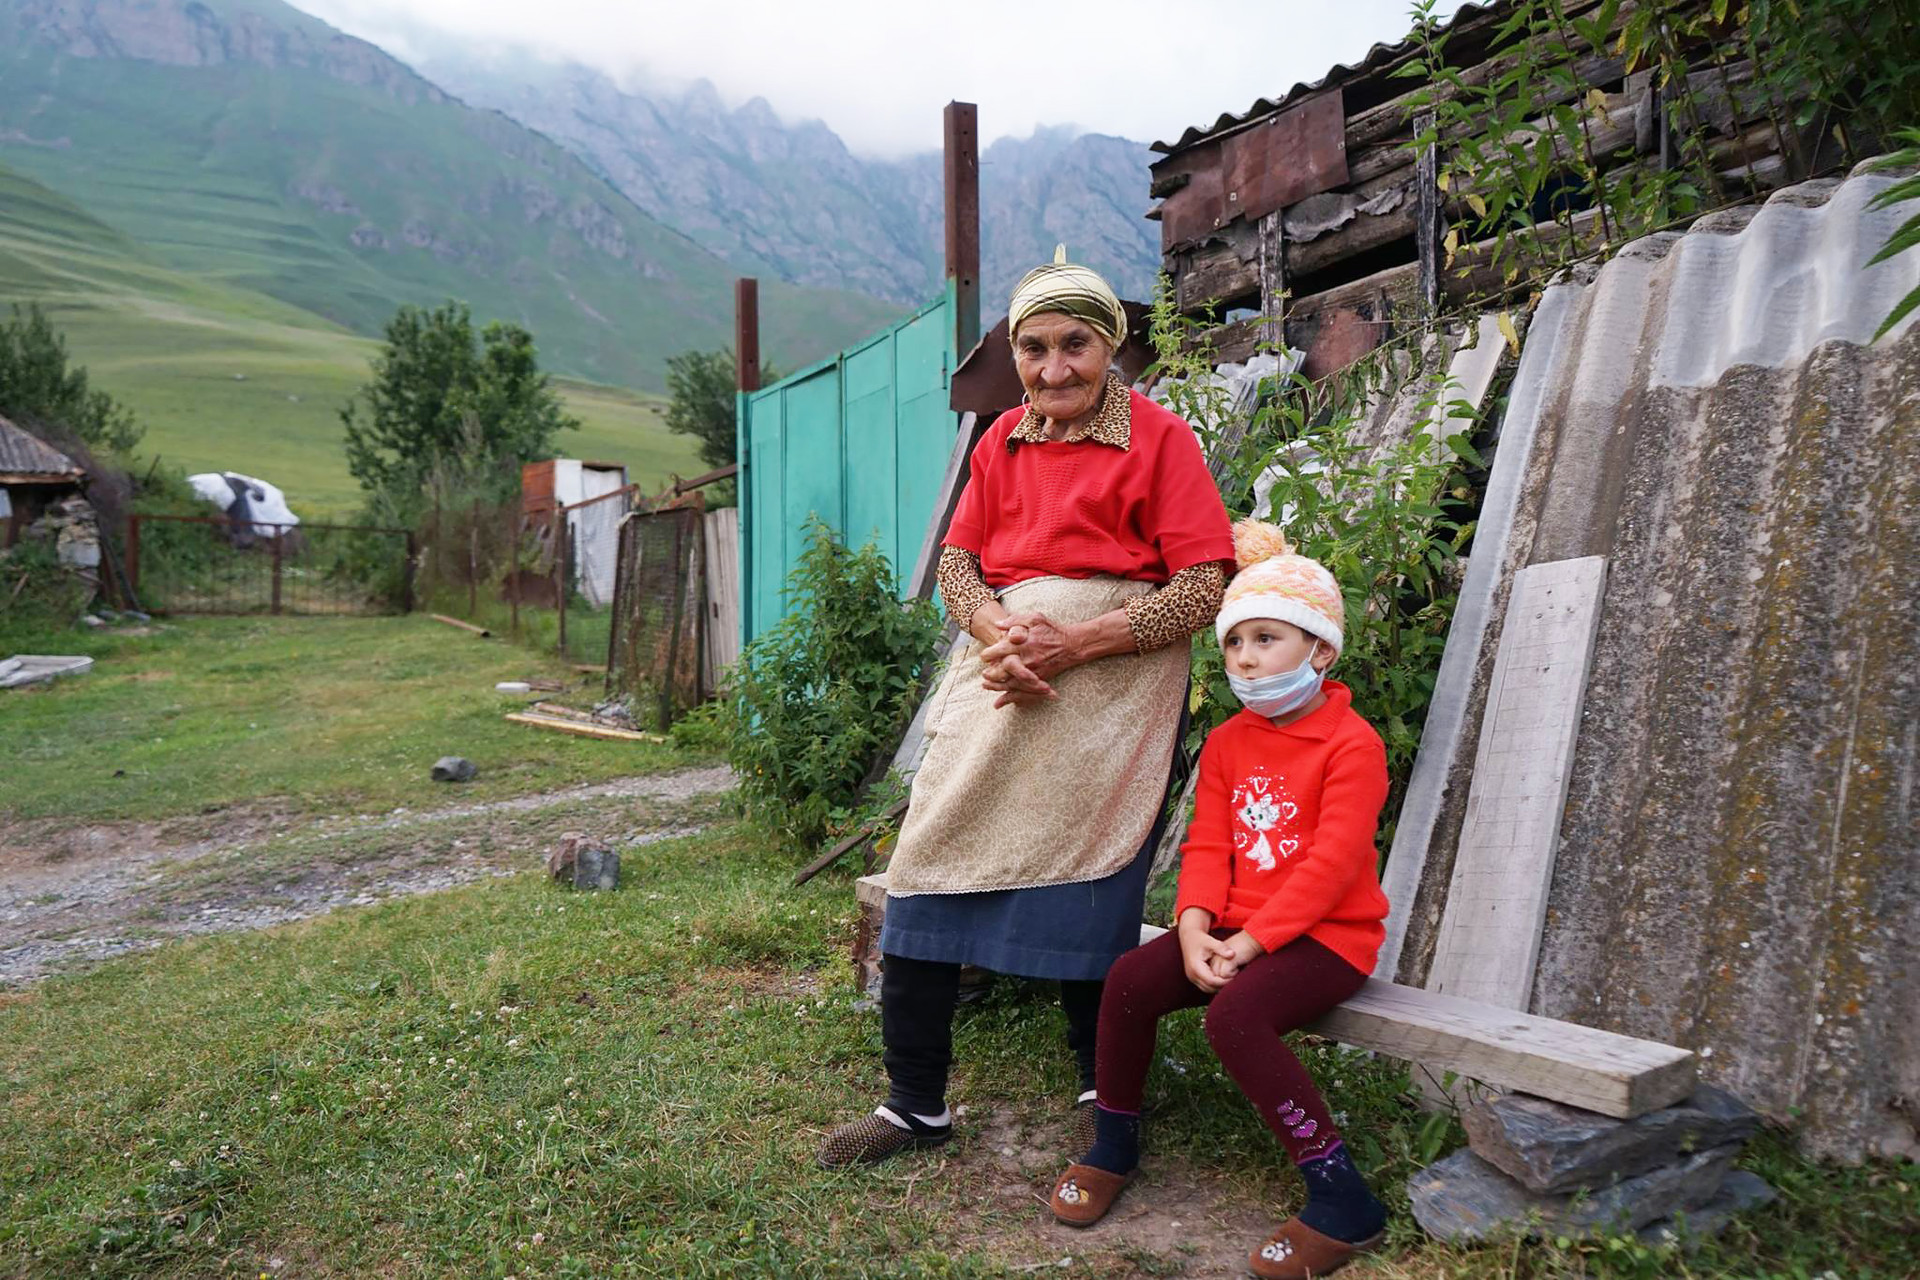 ザラさんとひ孫娘のジェッシカさんはロシアの北オセチア共和国、カルマドン峡谷にあるマイラミカウという小村に住んでいる。ザラさんはずっとここに住み、とても幸せだ。コーカサスは百歳以上の人の数が世界で最も多い地方だと言われている。
